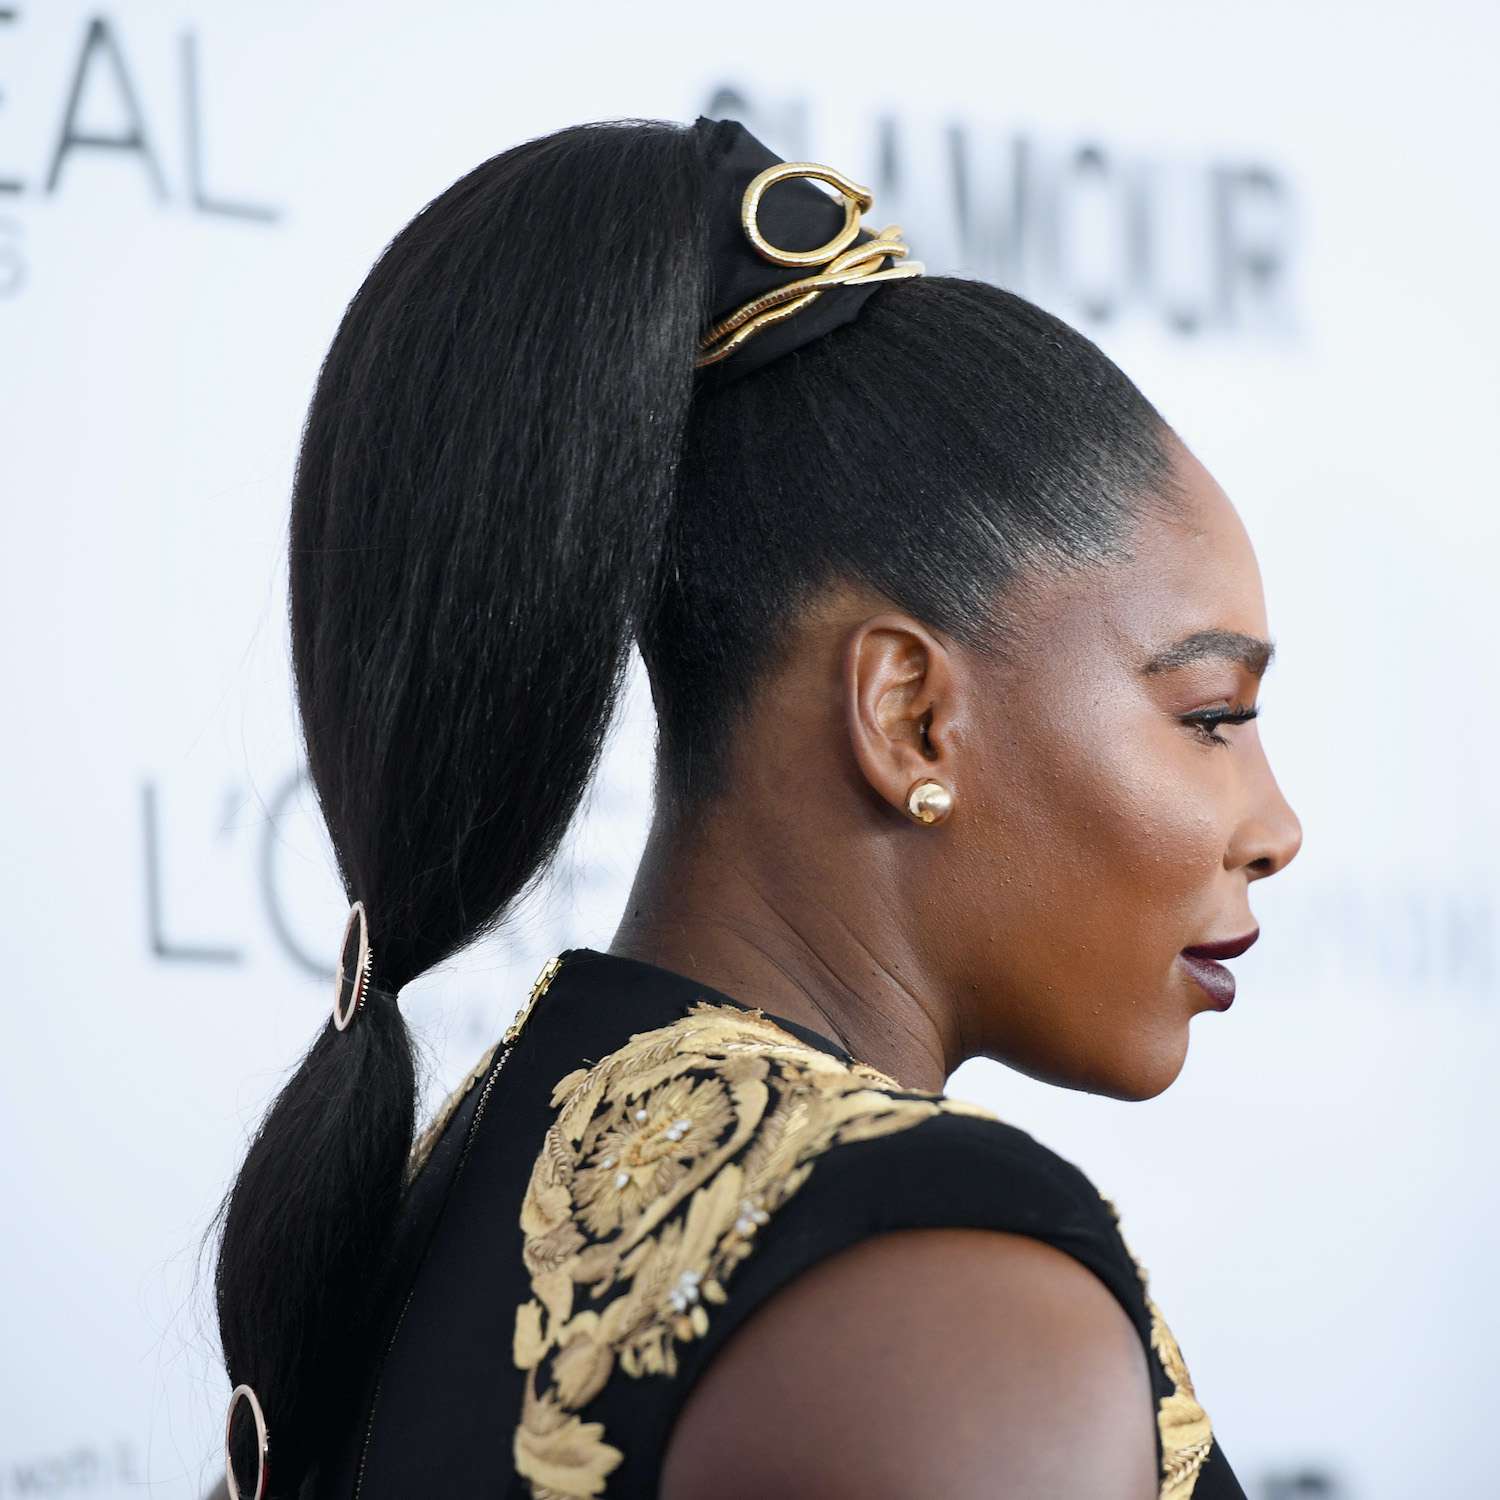 Serena Williams usa um rabo de cavalo alto e elegante com acessórios dourados